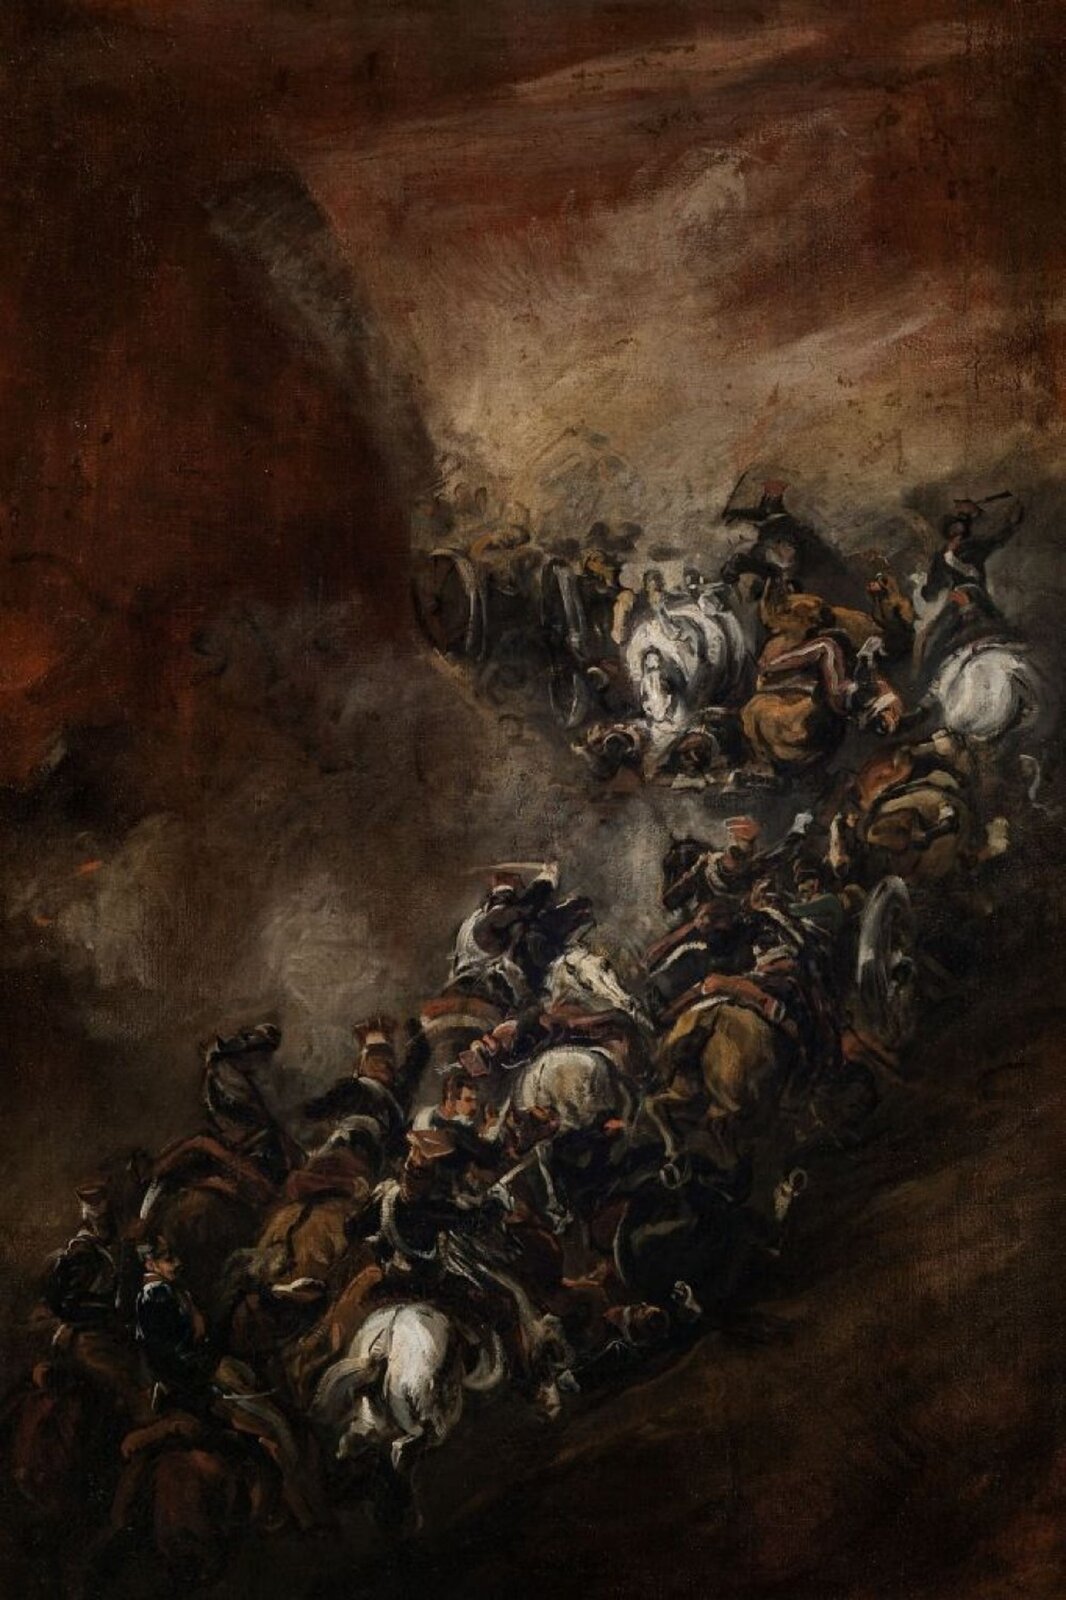 Ilustracja przedstawia dzieło "Szarża w wąwozie Somosierra" z 1837 autorstwa Piotra Michałowskiego. Obraz przedstawia kulminacyjny moment szarży, gdy pierwsi jeźdźcy osiągają siodło przełęczy, na której znajdują się hiszpańskie armaty, stanowiące kolejną linię obrony. Szwoleżerowie z impetem pokonują pod obstrzałem krętą i wąską górską ścieżkę, stromo wznoszącą się ku przełęczy. Padają zabici i ranni, część koni pędzi bez jeźdźców. Wokół cwałującego szwadronu wznoszą się tumany rdzawobrunatnego pyłu, skrywającego wszystko poza kawalerzystami. Obraz jest bardzo ciemny.